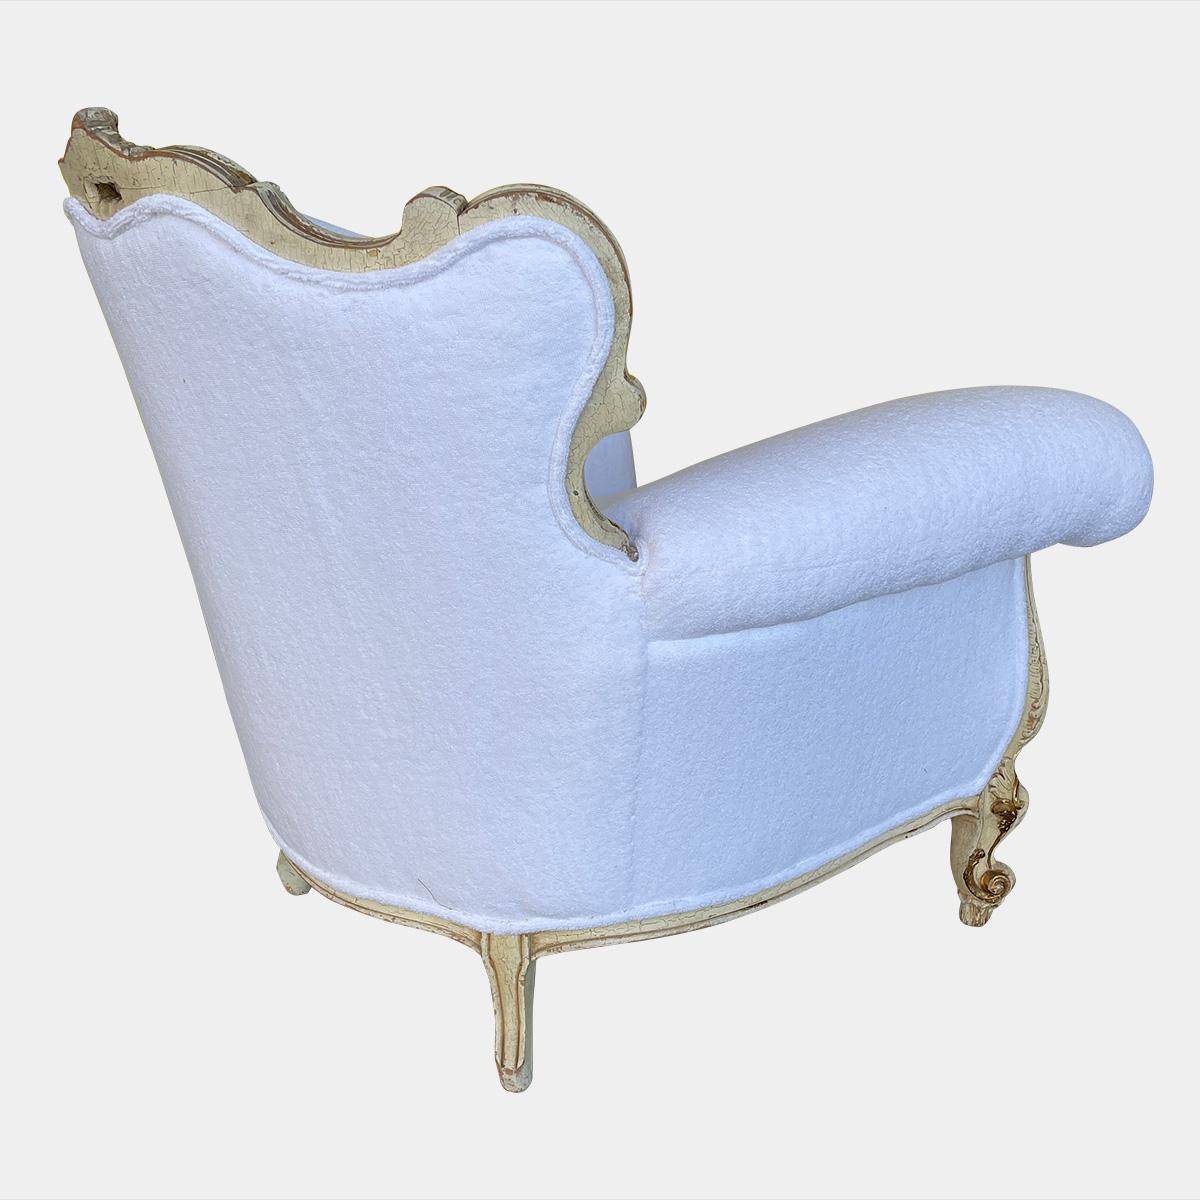 Grand fauteuil de style rococo de la fin du XIXe siècle, recouvert de Whiting blanc et doté d'un coussin à plumes. Le cadre doré du colis est orné de rinceaux, de feuillages et de coquillages, avec une patine d'origine et des traces de choc. Re